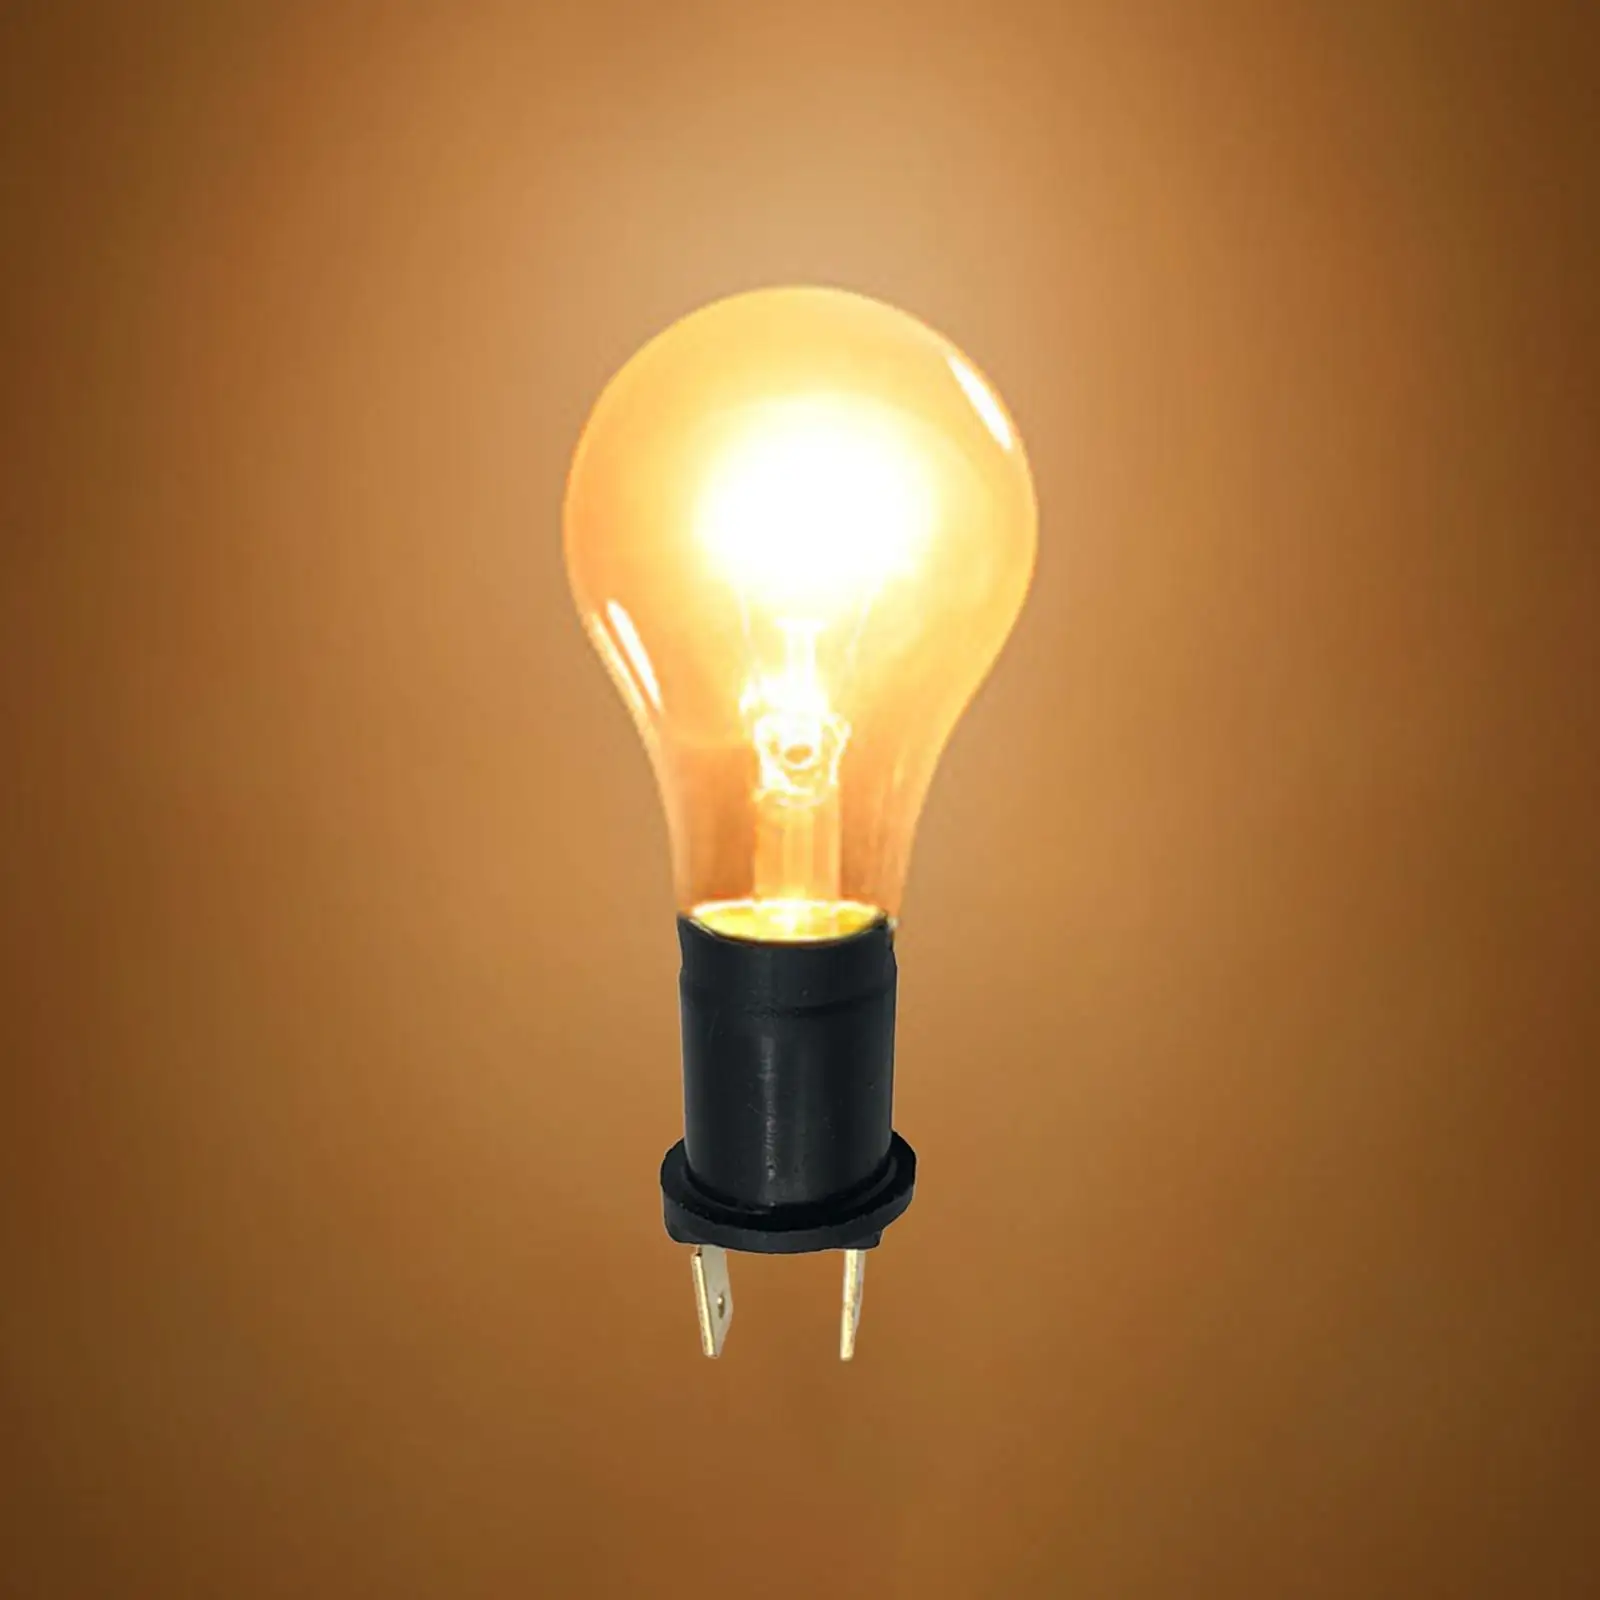 Side Light Lamp Holder Replace Bulb Holder Side Light Lamp for 233C 12V 4W 227 24V 5W 433A 12V 5W 433 12V 20W 233afl 48V 5W